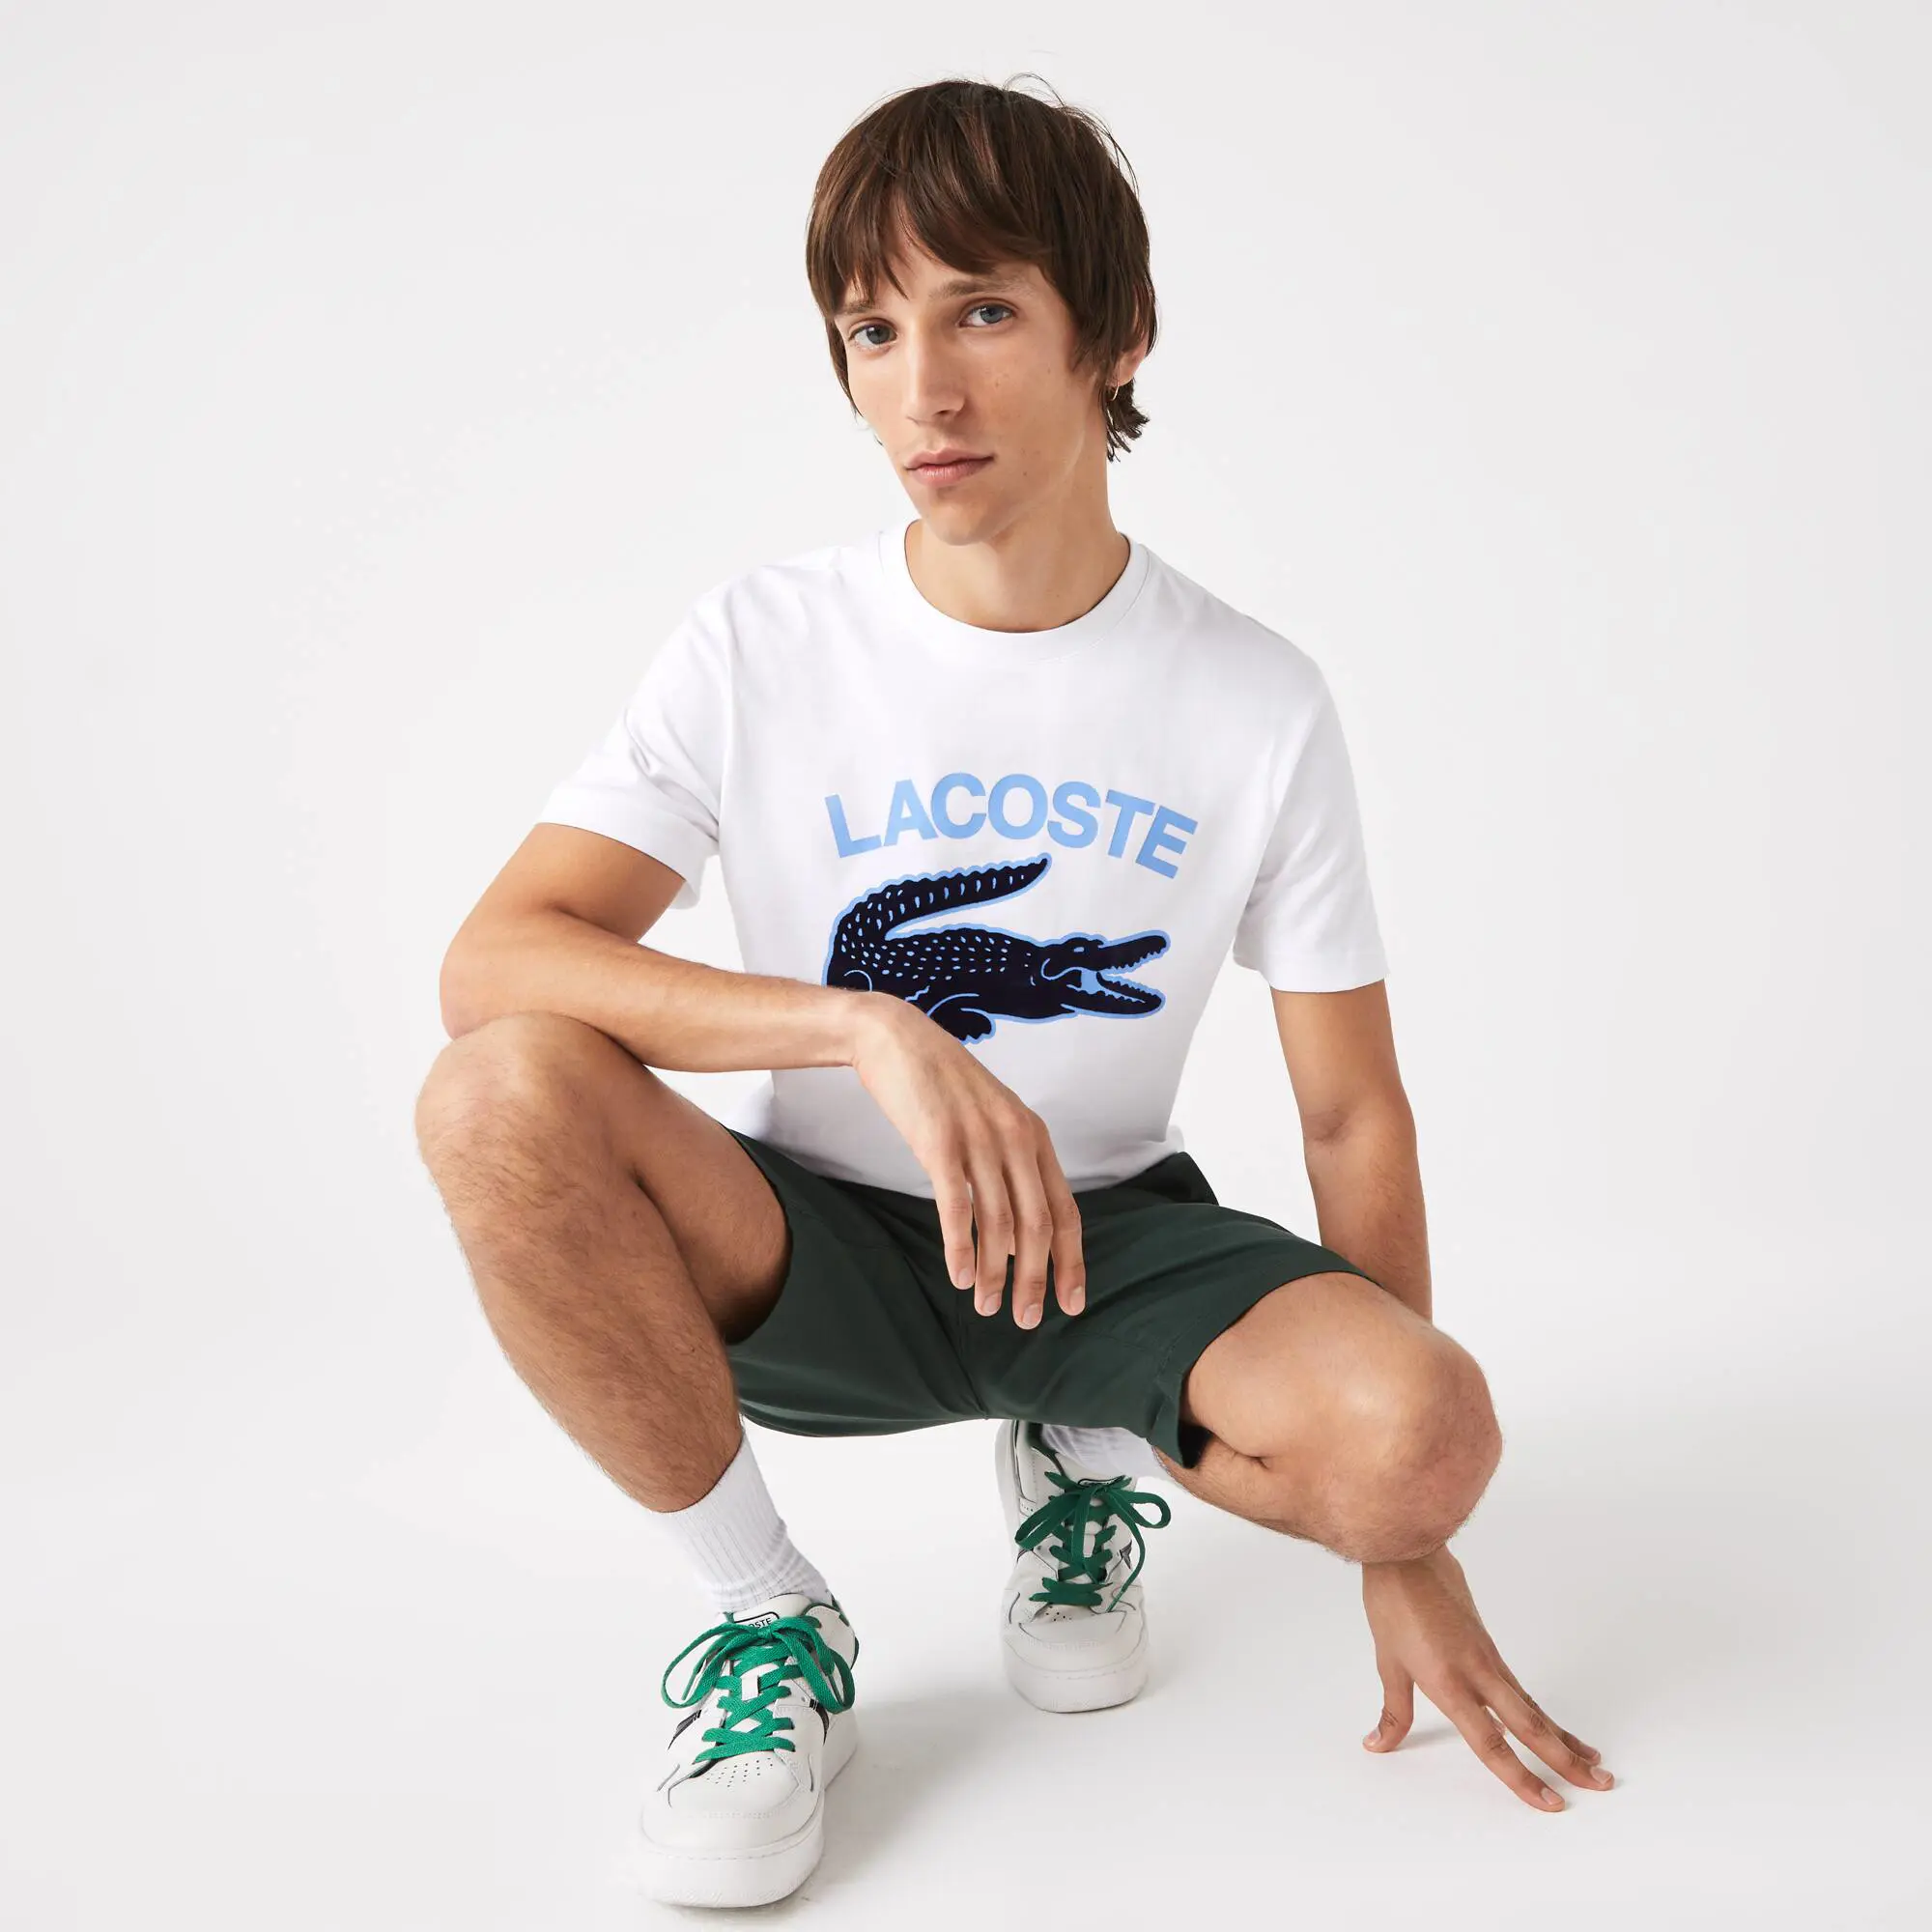 Lacoste T-shirt homme regular fit avec imprimé crocodile XL Lacoste. 1